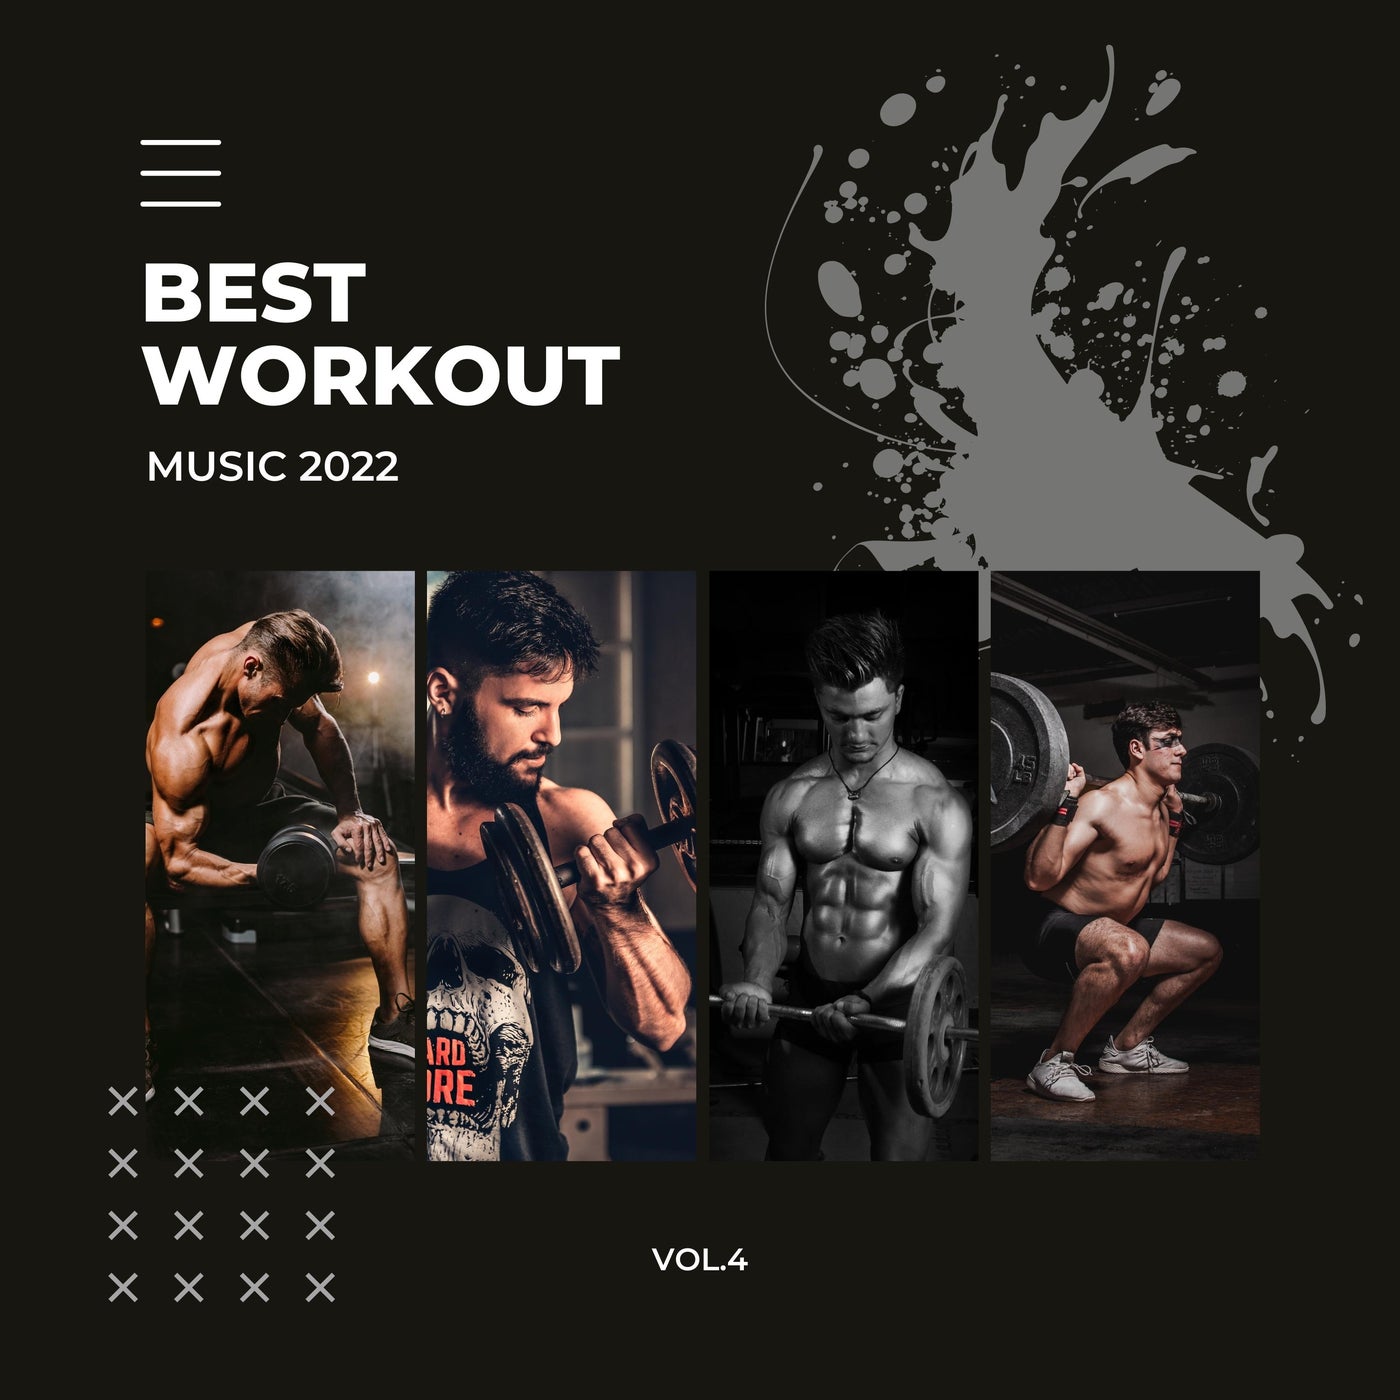 Best Workout Music 2022, Vol.4